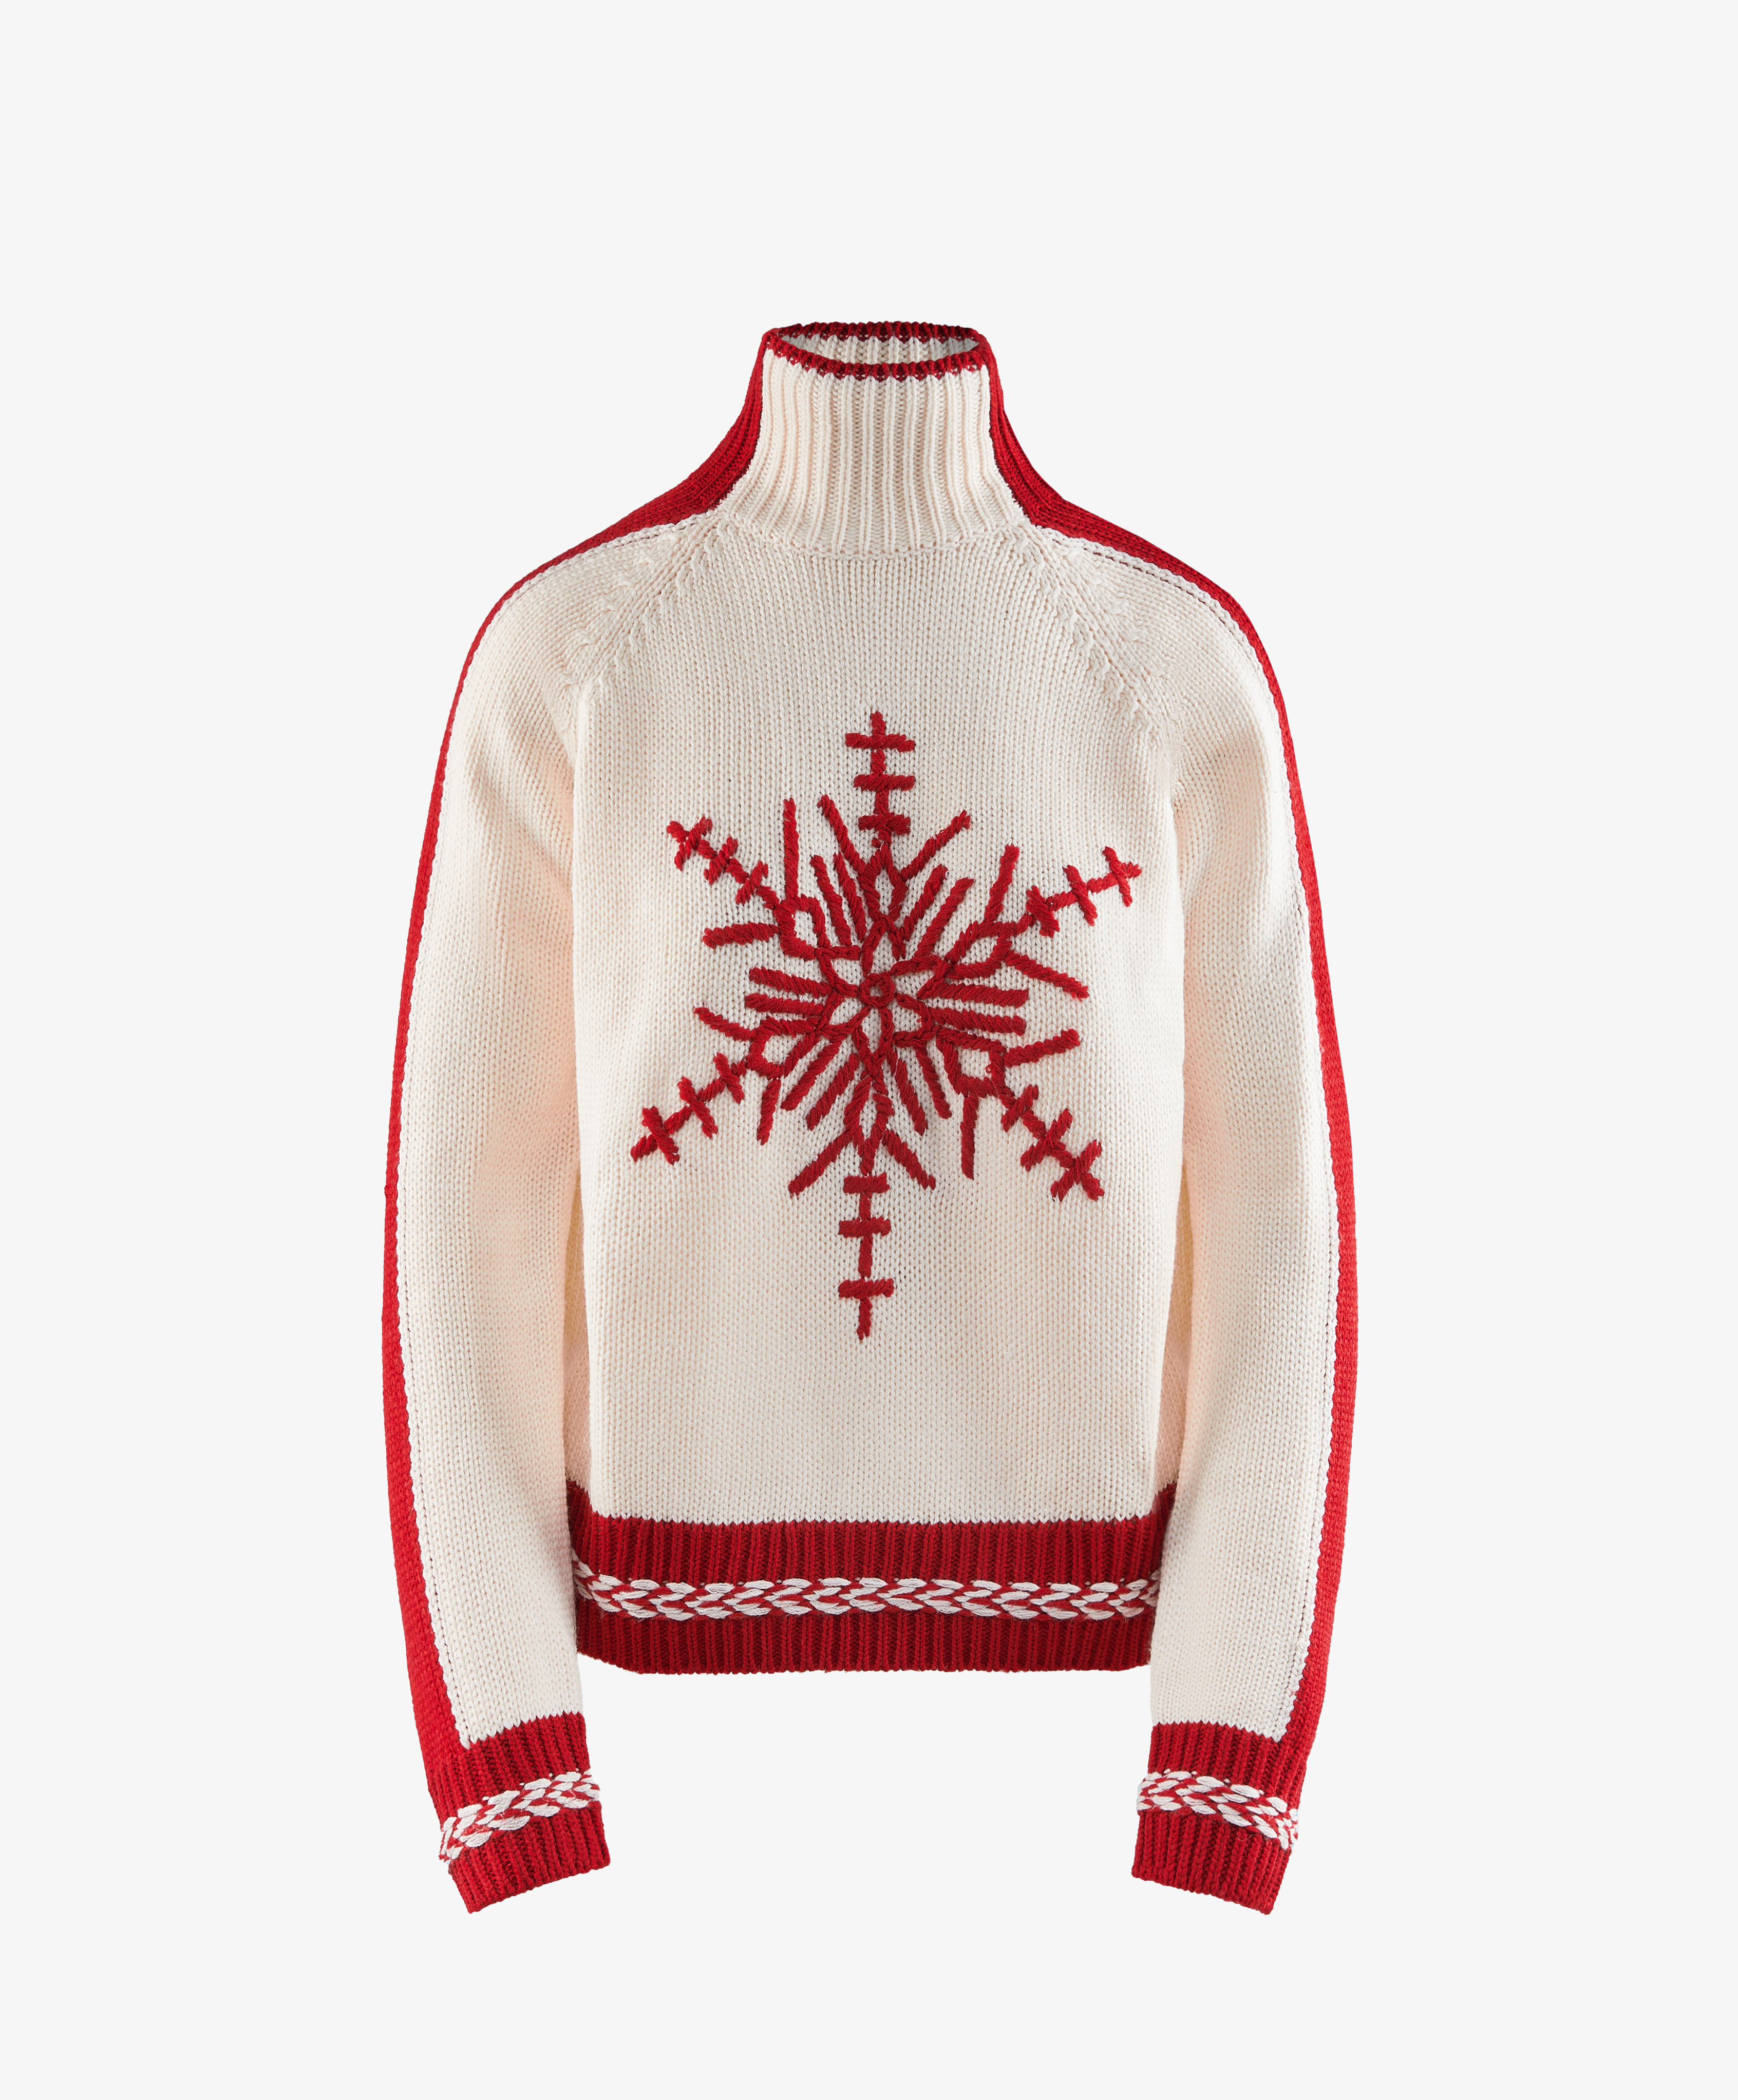 Gebreide sweater met jacquardprint van sneeuwvlok